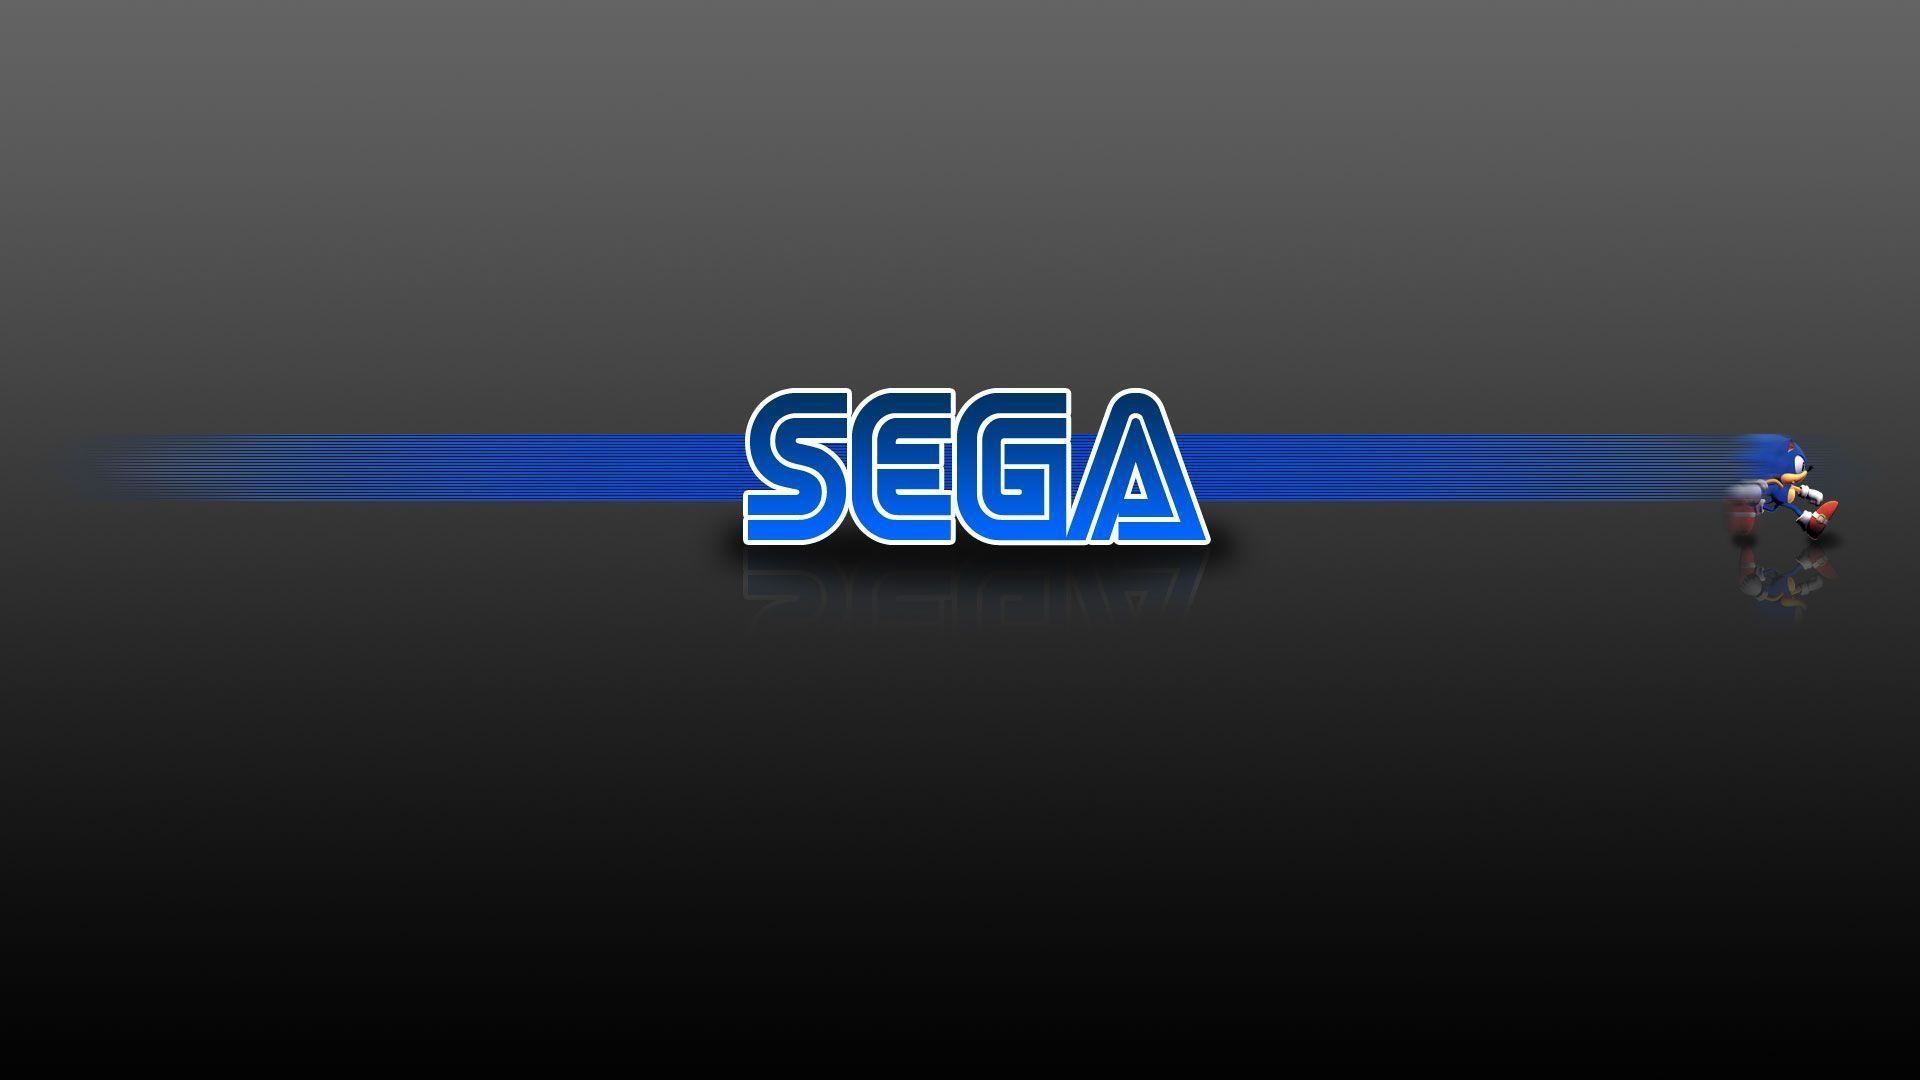 1920x1080 Fonds d'Ã©cran Sega : tous les wallpapers Sega